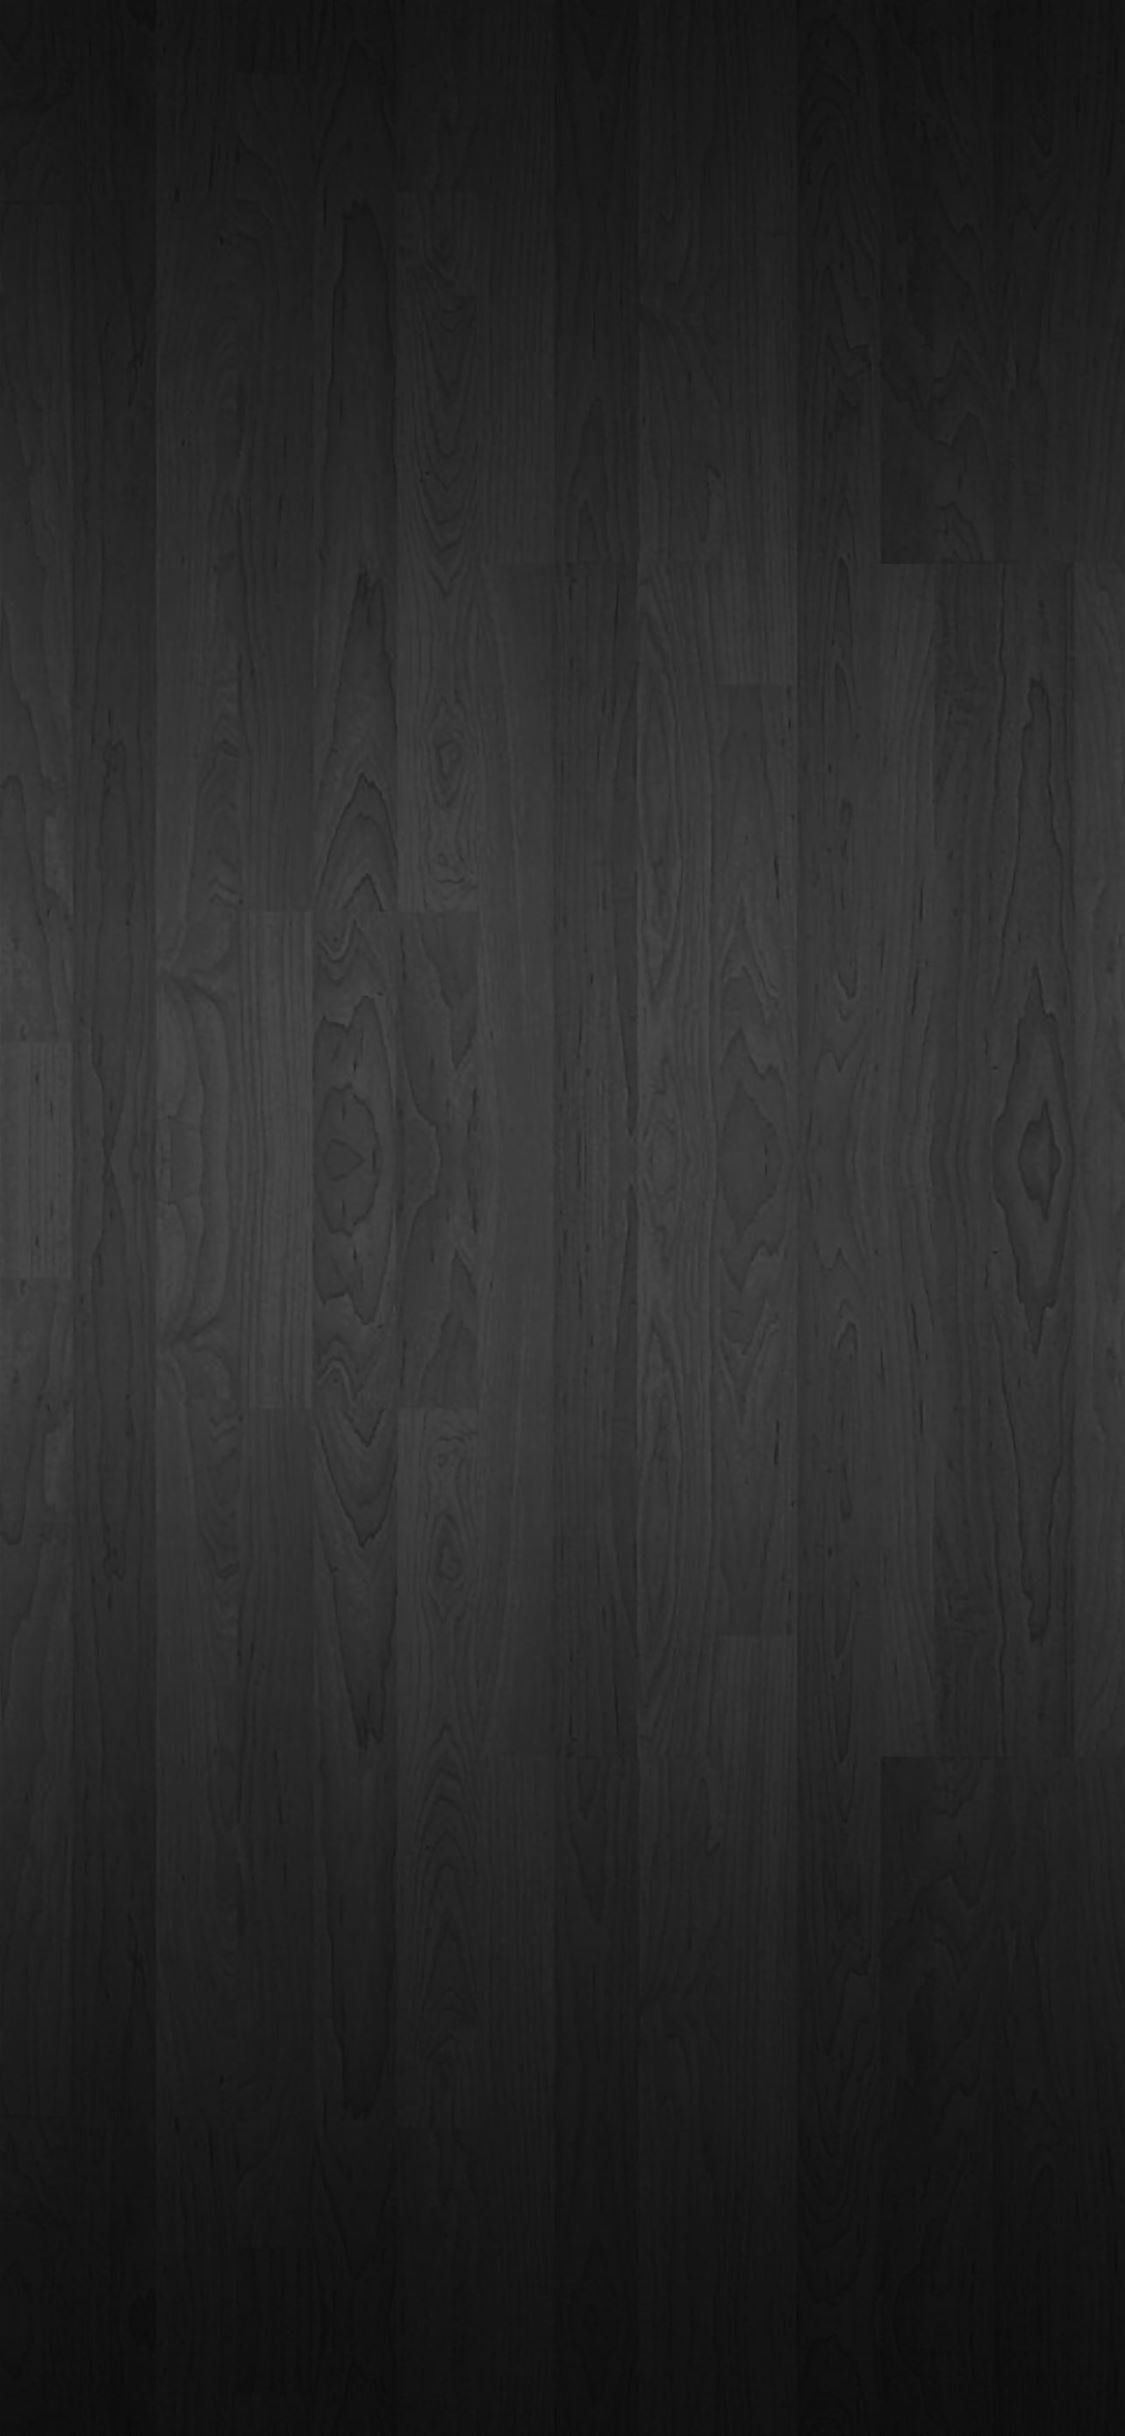 Dark Wood Texture iPhone wallpaper 